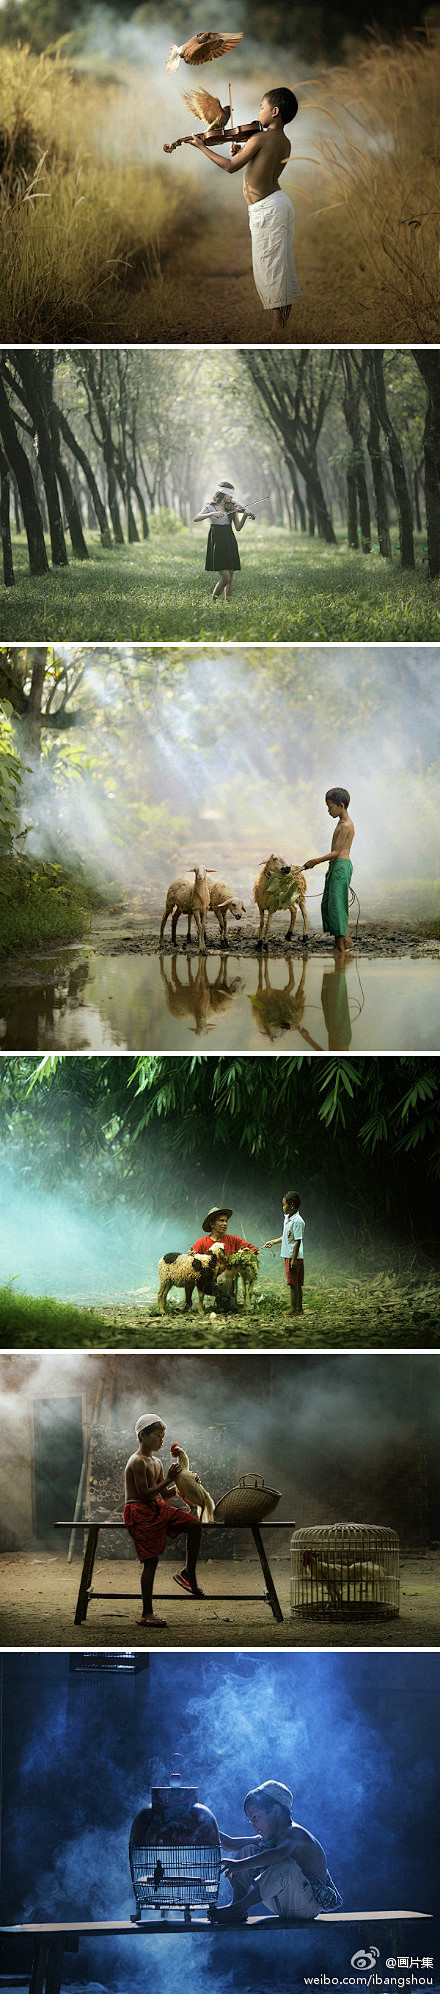 来自印度尼西亚摄影师Achmad Mun...